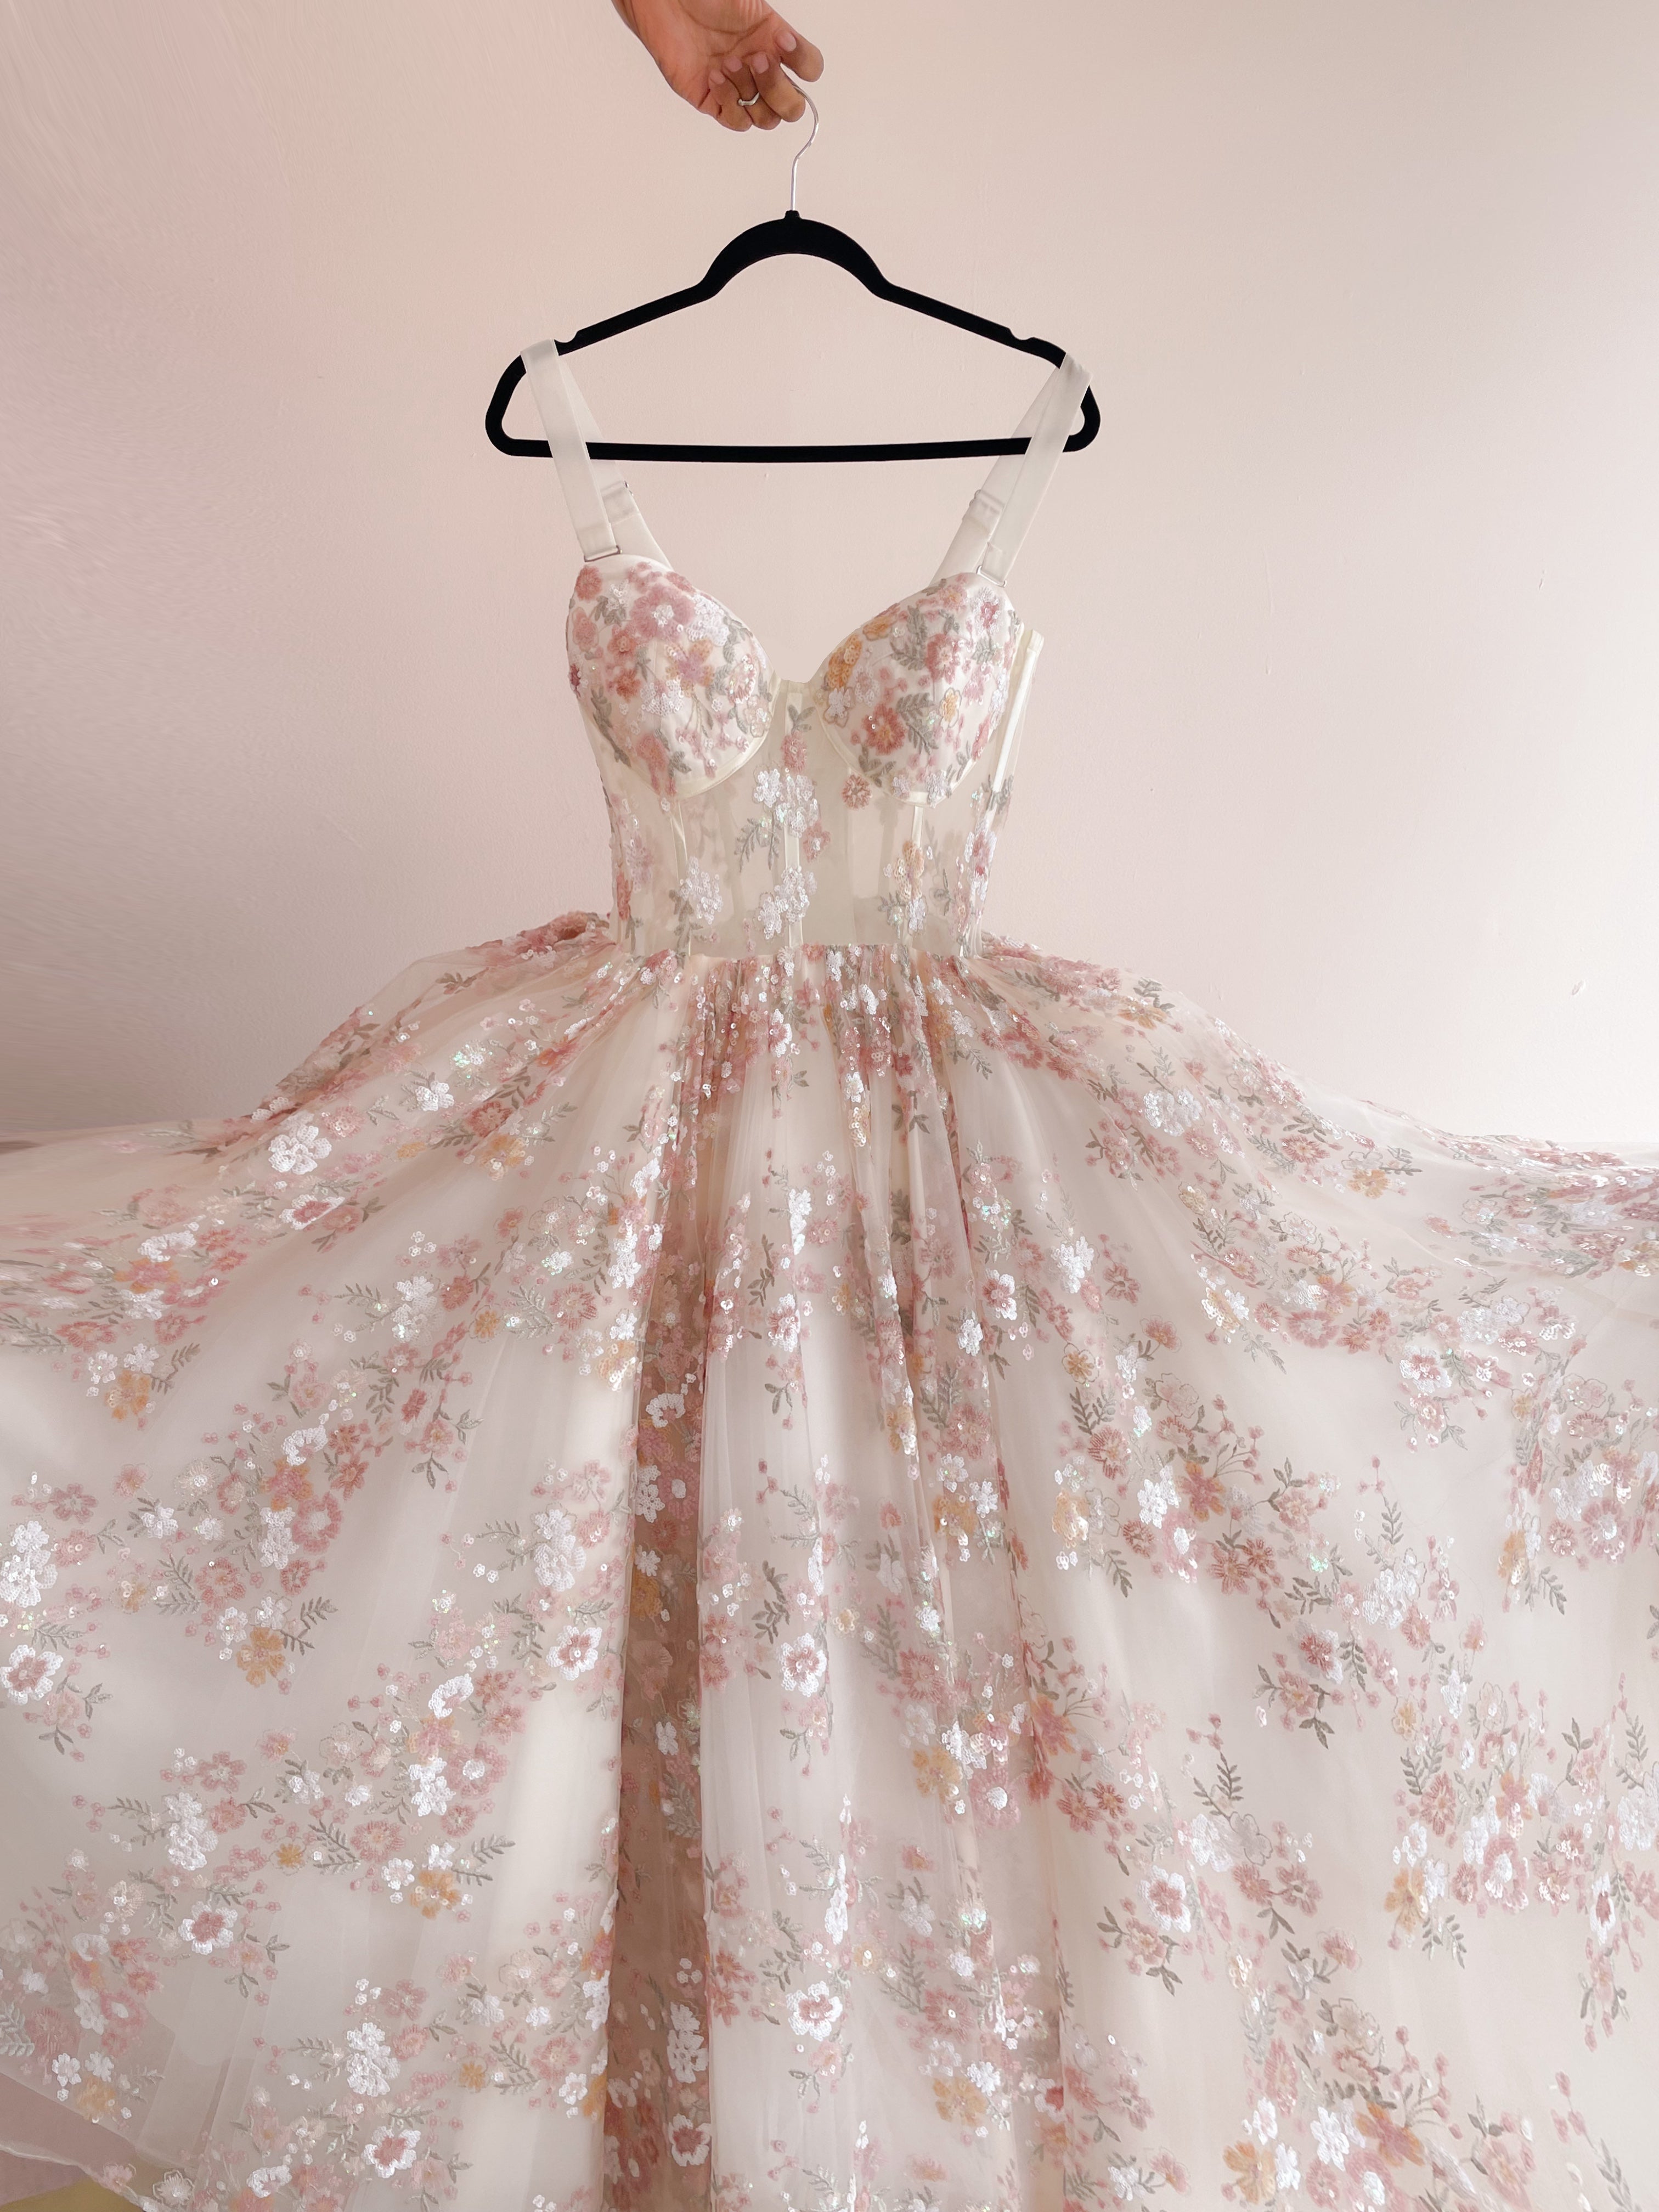 Gabriela bridal dress